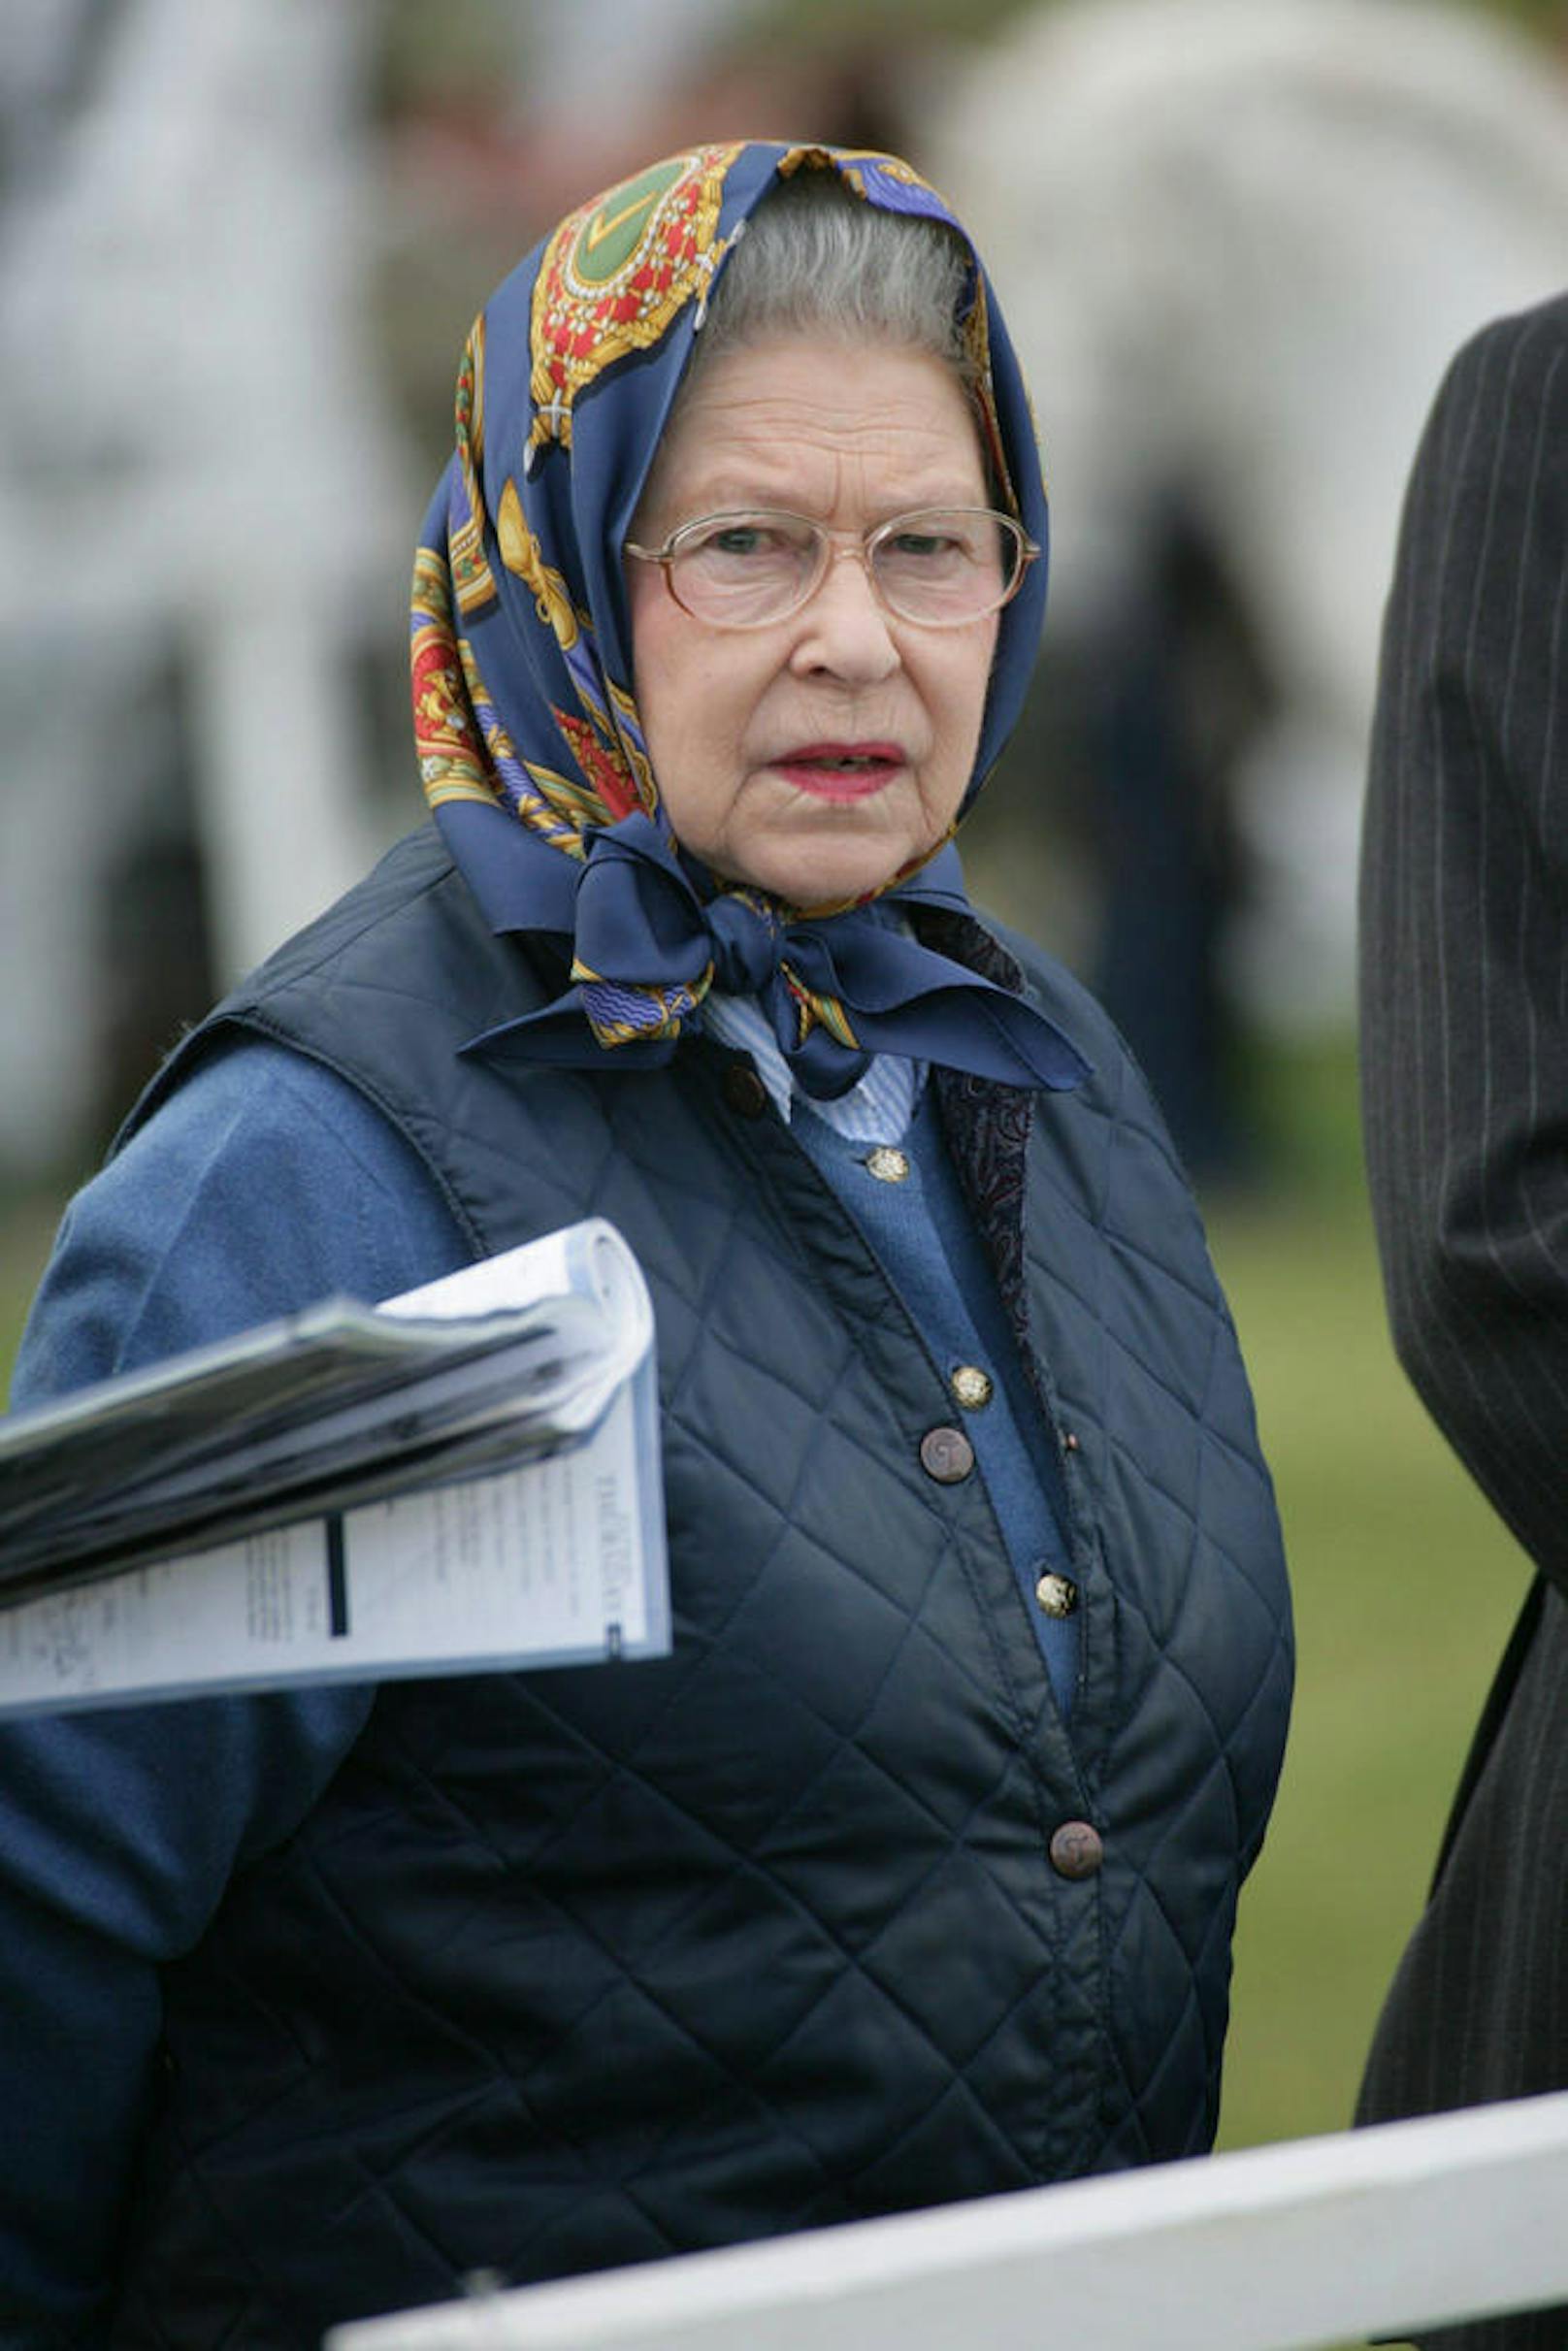 Man sieht die Queen kaum ohne ihre Handtasche. Darin hat sie immer Glücksbringer, Fotos, Minzbonbons, Hundekekse, Schreibstift, Terminkalender, ihre Brille, Schmink-Utensilien.

Foto: 
16.05.2009 - Fixtermin für die Pferdenärrin Königin Elizabeth II von Großbritannien: Die Royal Windsor Horse Show in Windsor.